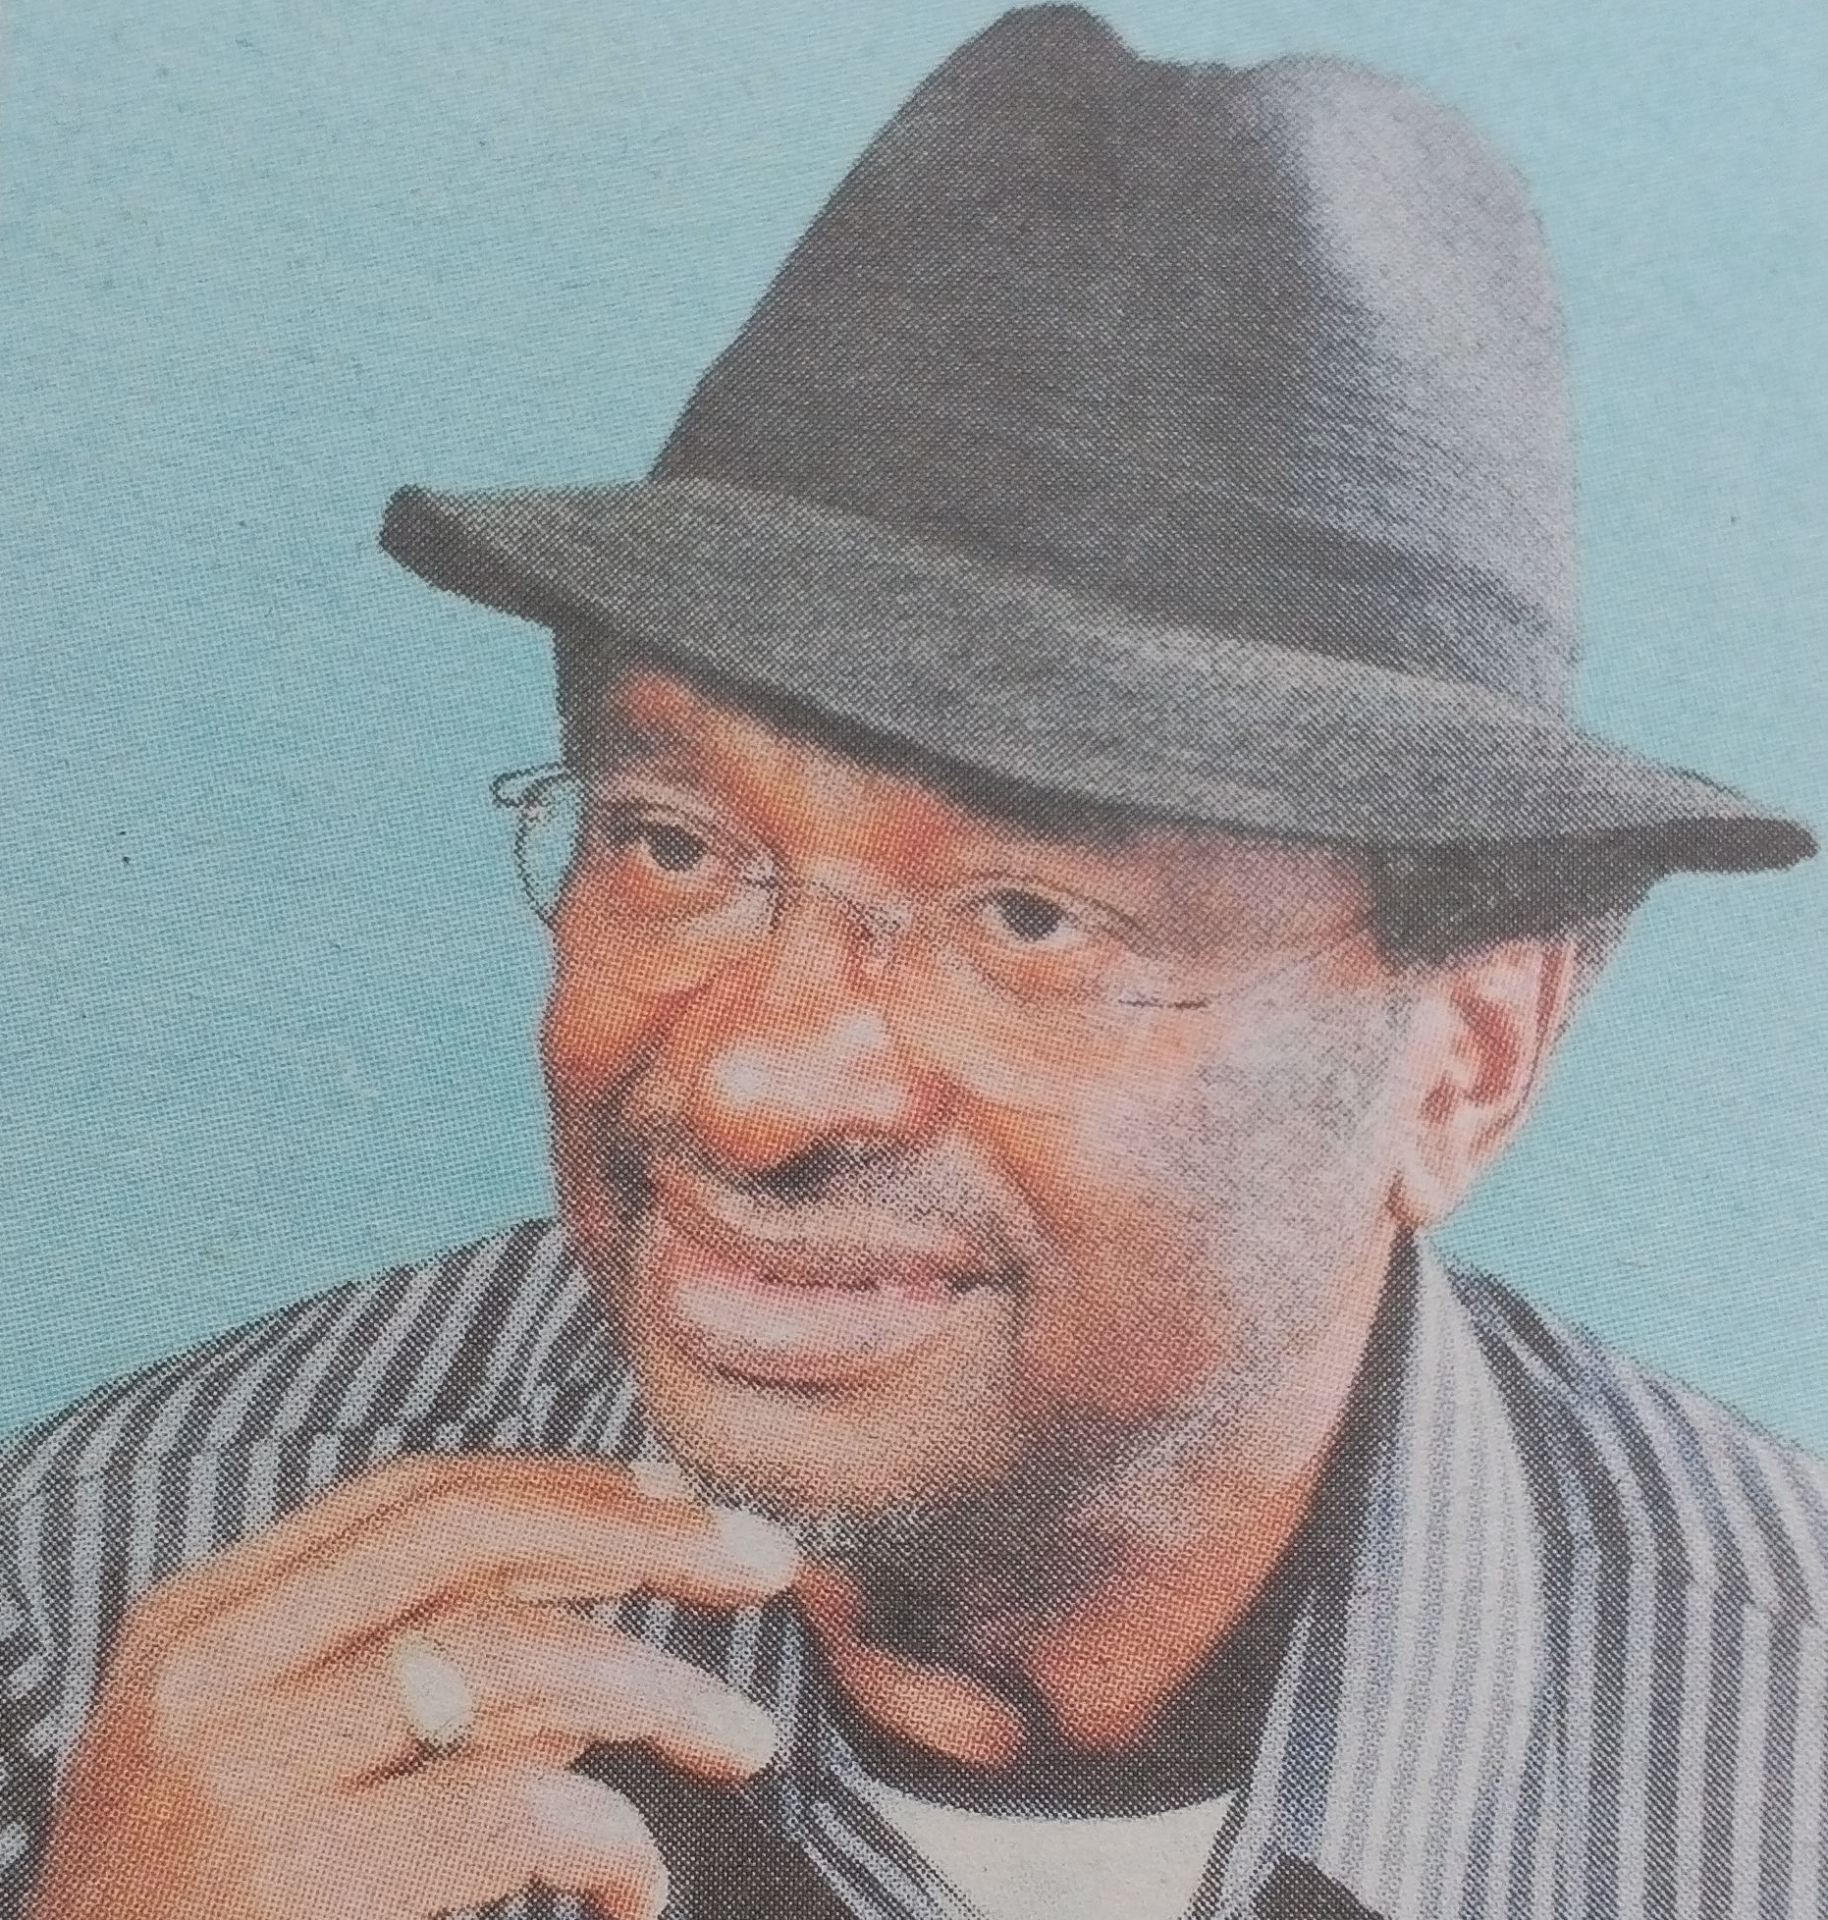 Obituary Image of Prof. Mutuma Mugambi DSM; MBS; MB, ChB; dip. Cardiol; PhD; MKAS; FCAM